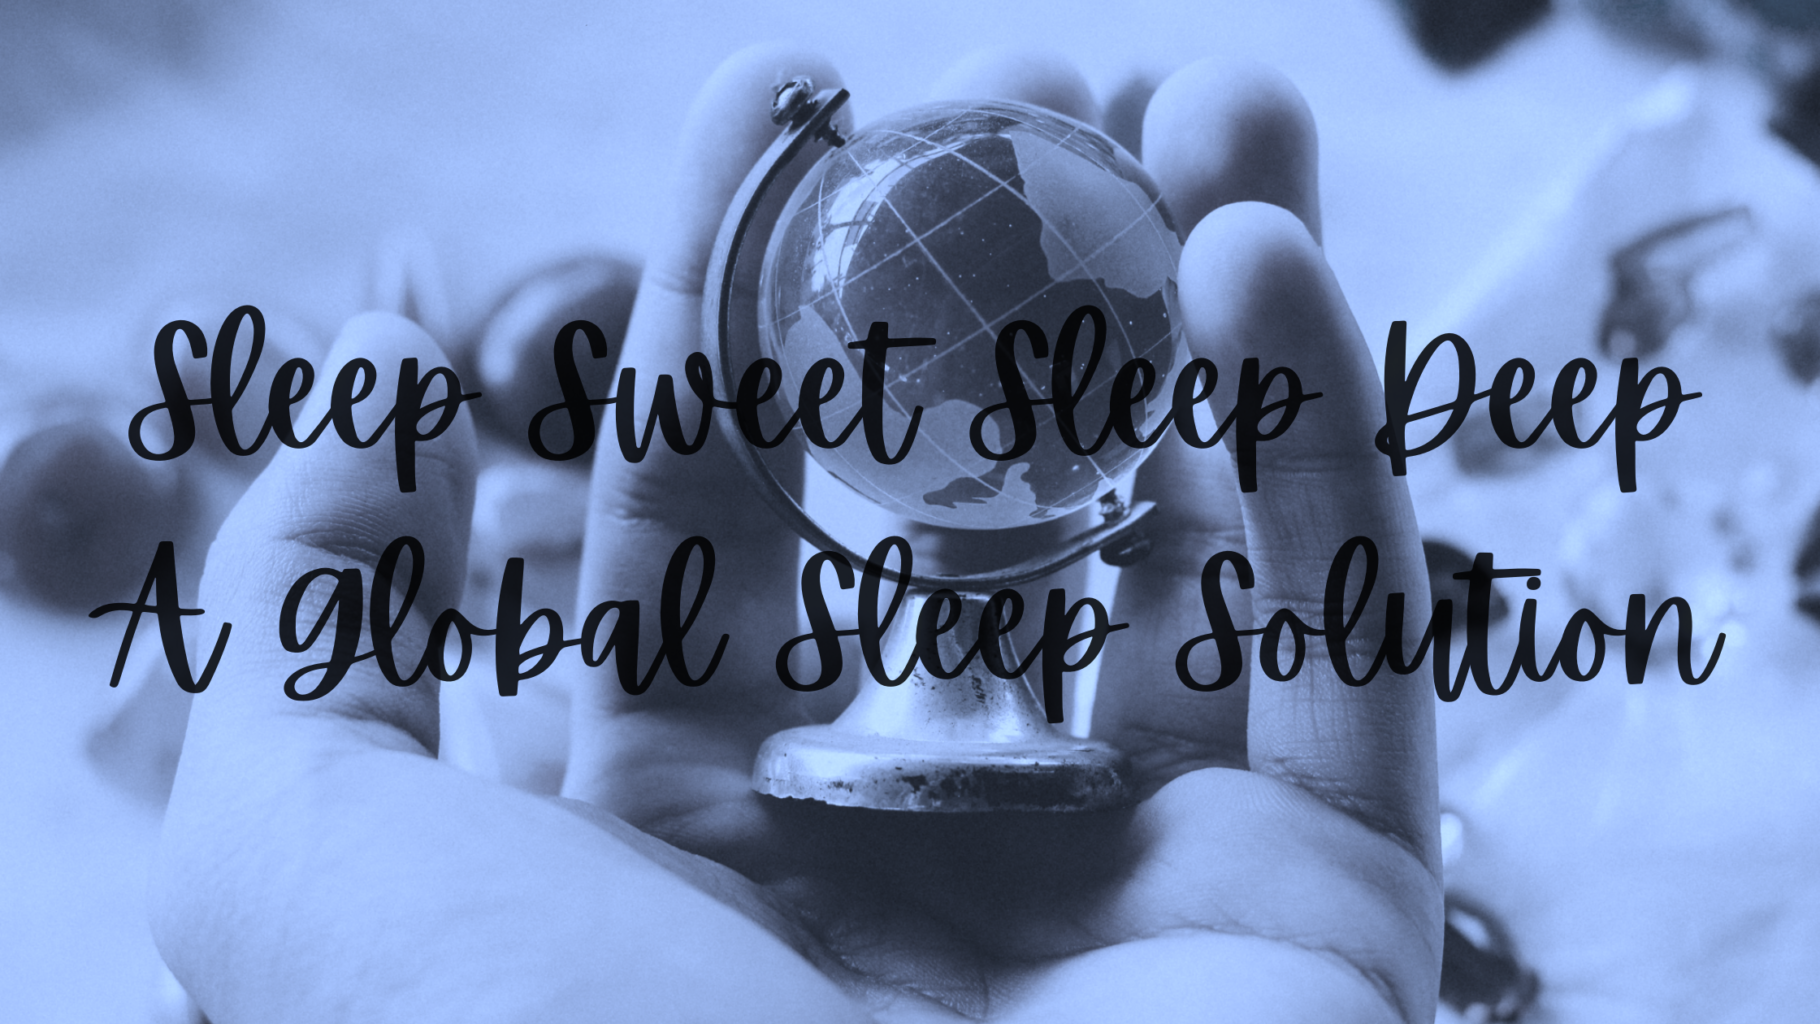 global sleep solution sleep sweet sleep deep